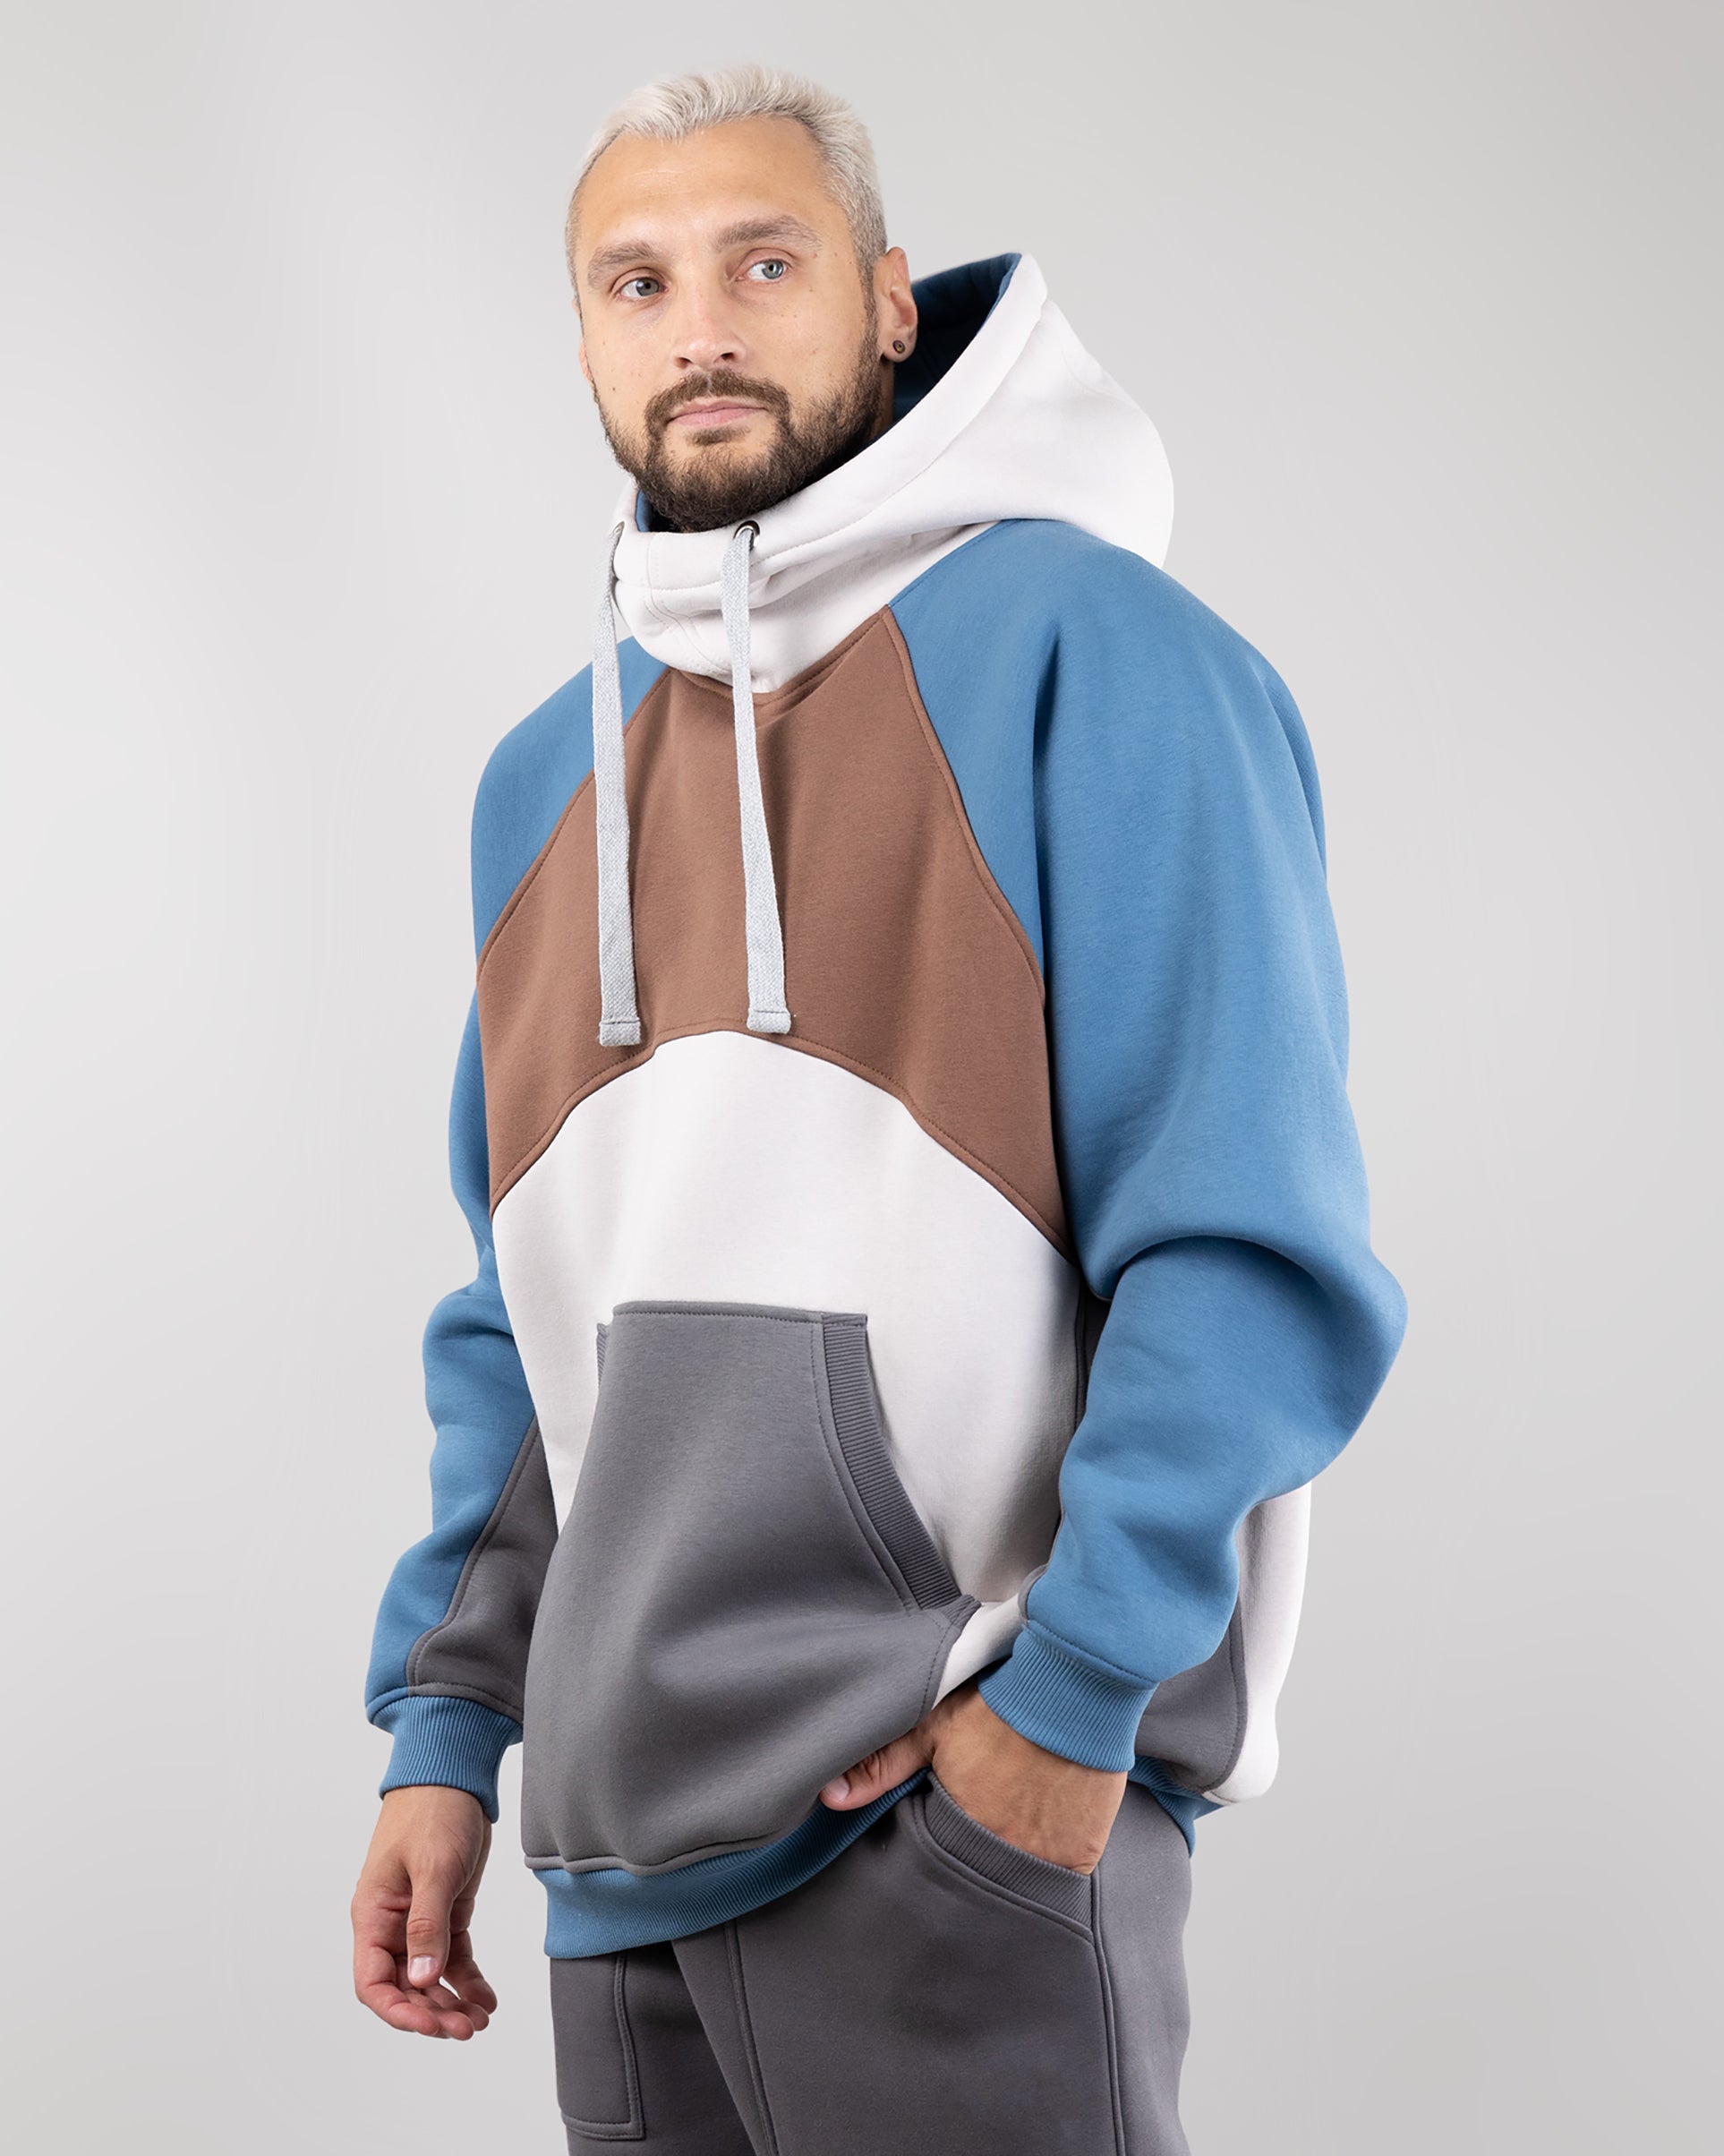 Hoodie "Umka", warm oversize hoodie. Brown/Cream/Blue. Man.